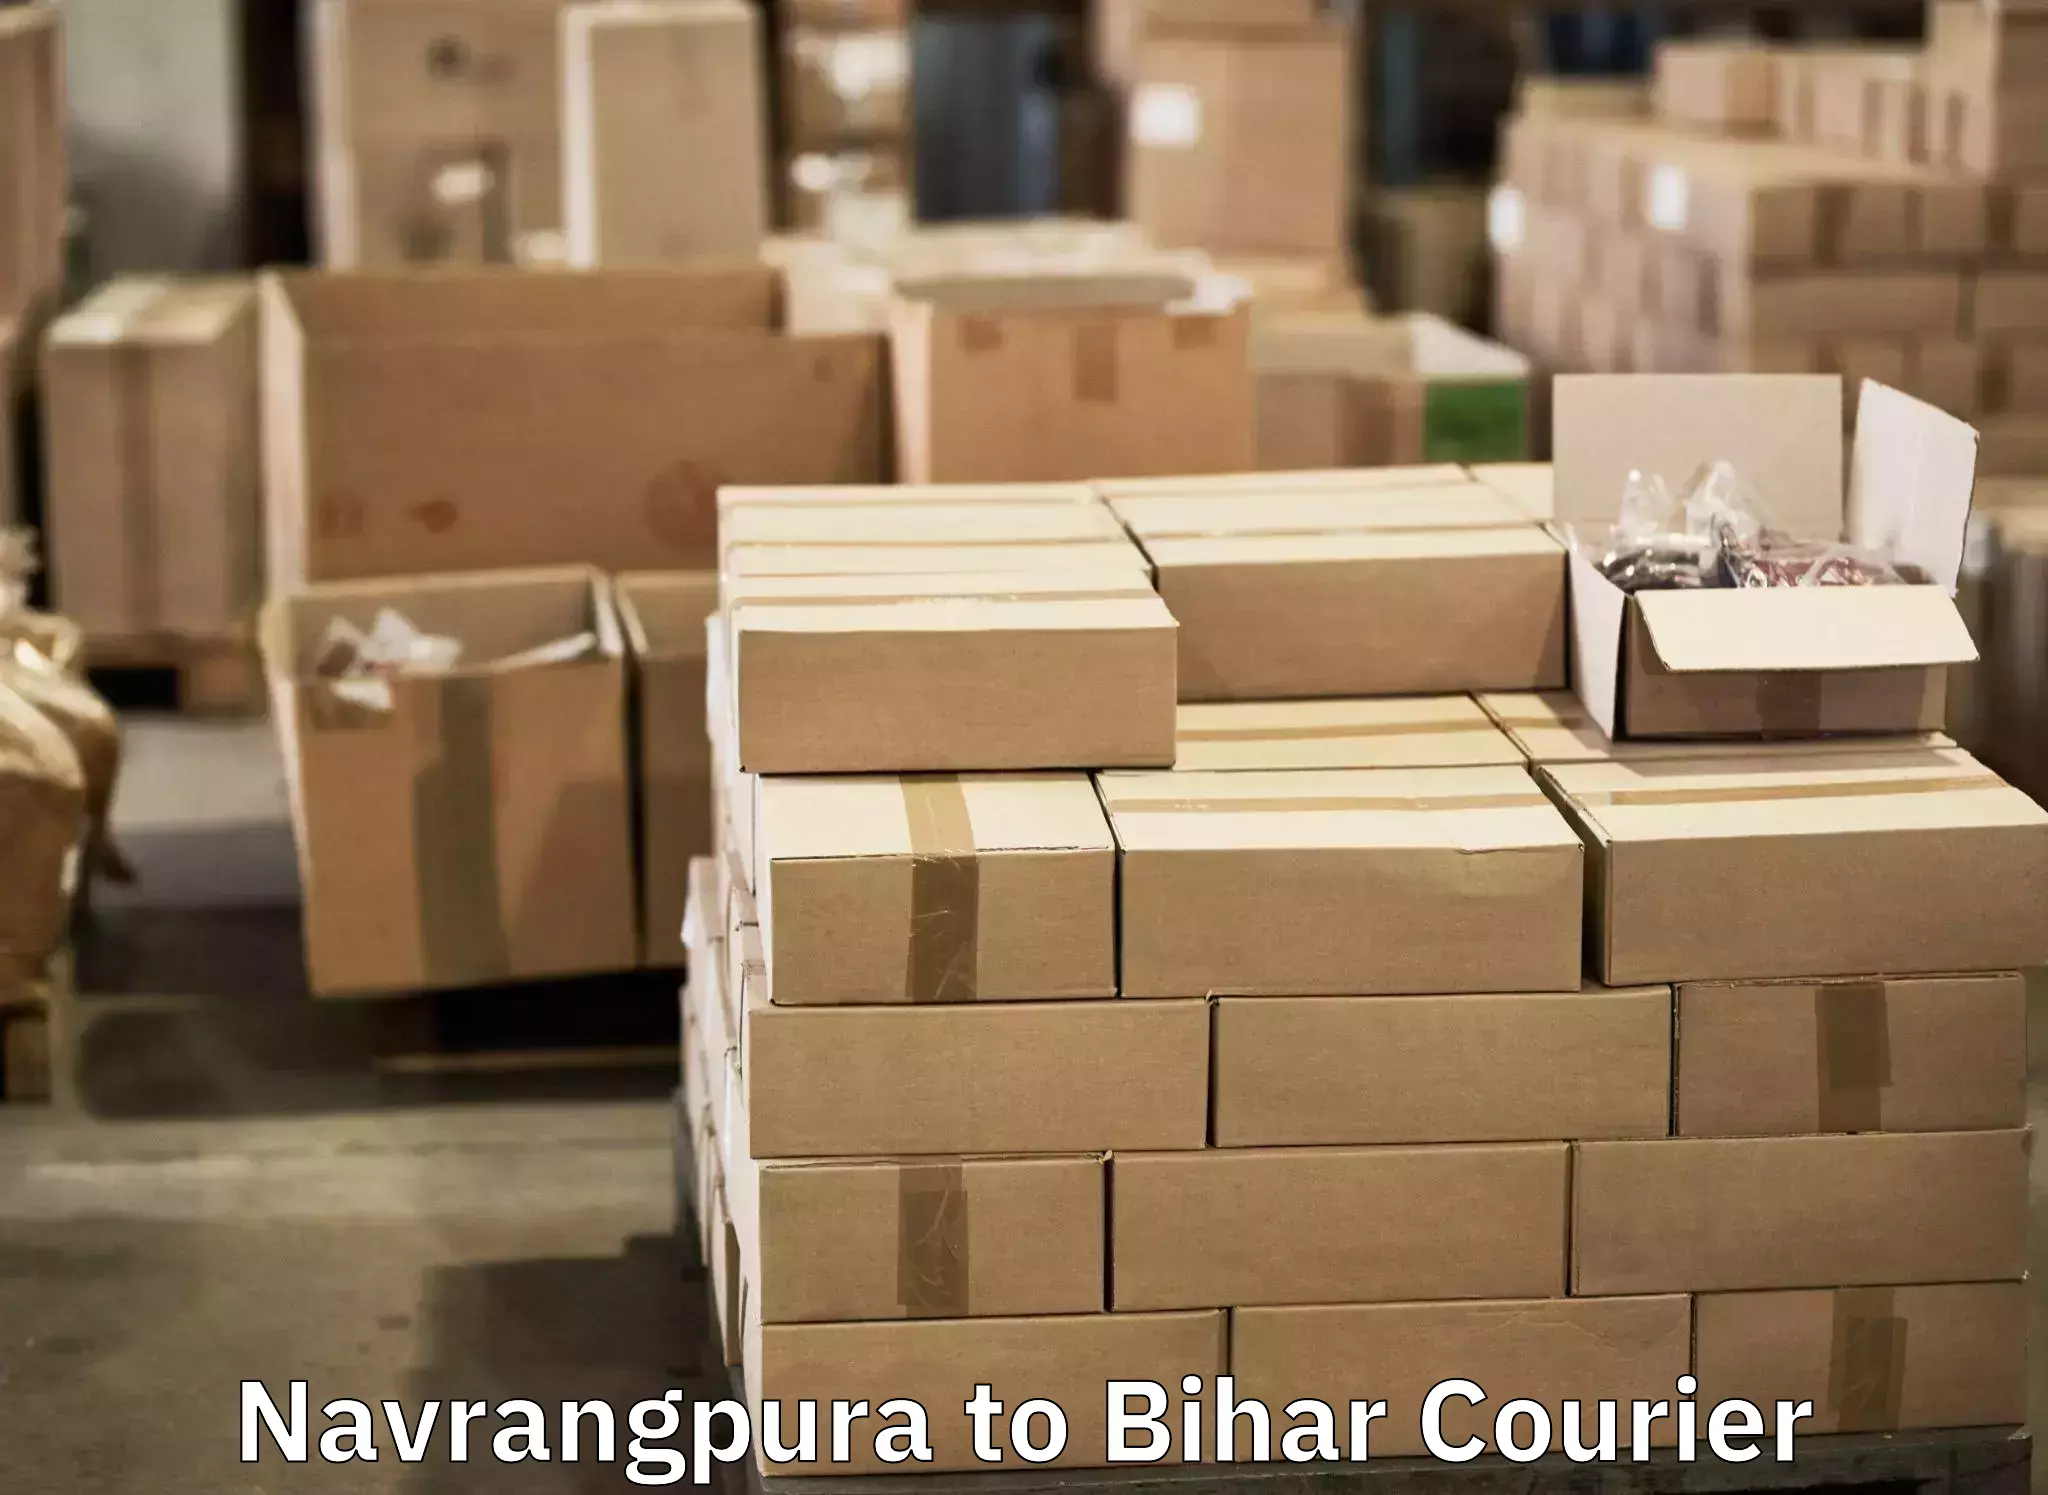 Doorstep luggage pickup Navrangpura to Bihar